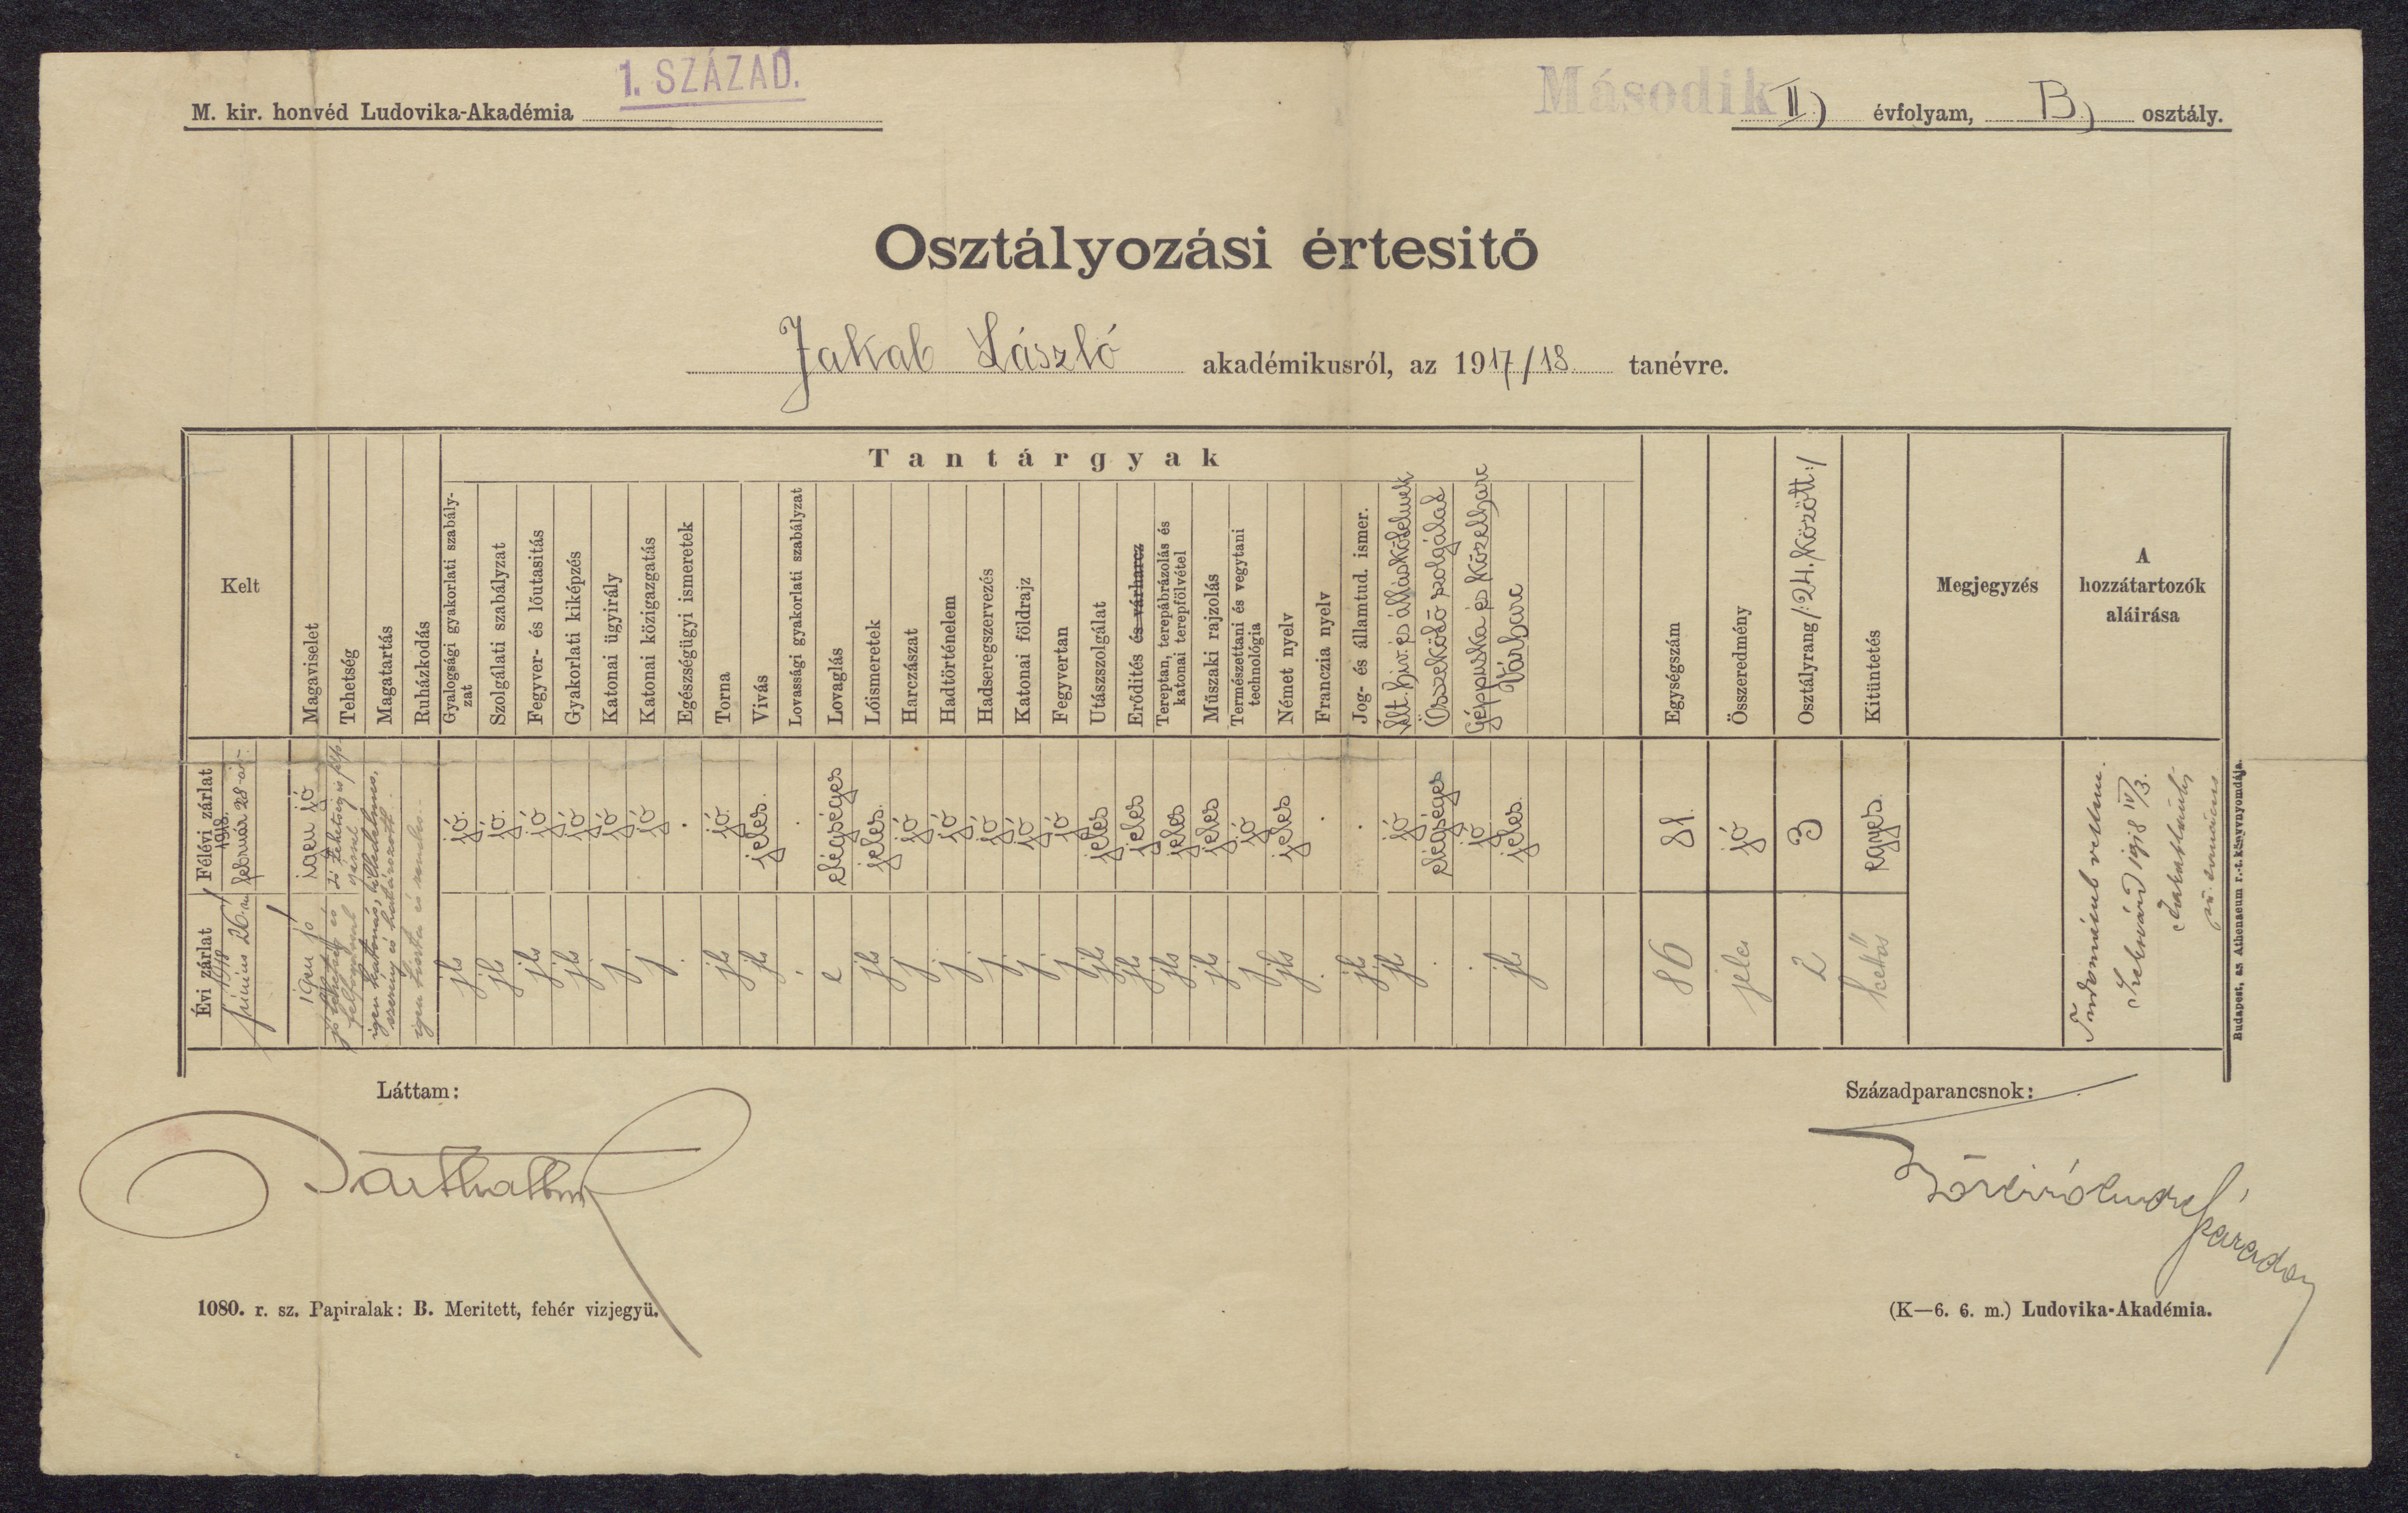 Osztályozási értesító Jakab László akadémikusról, az 1917/18. tanévre